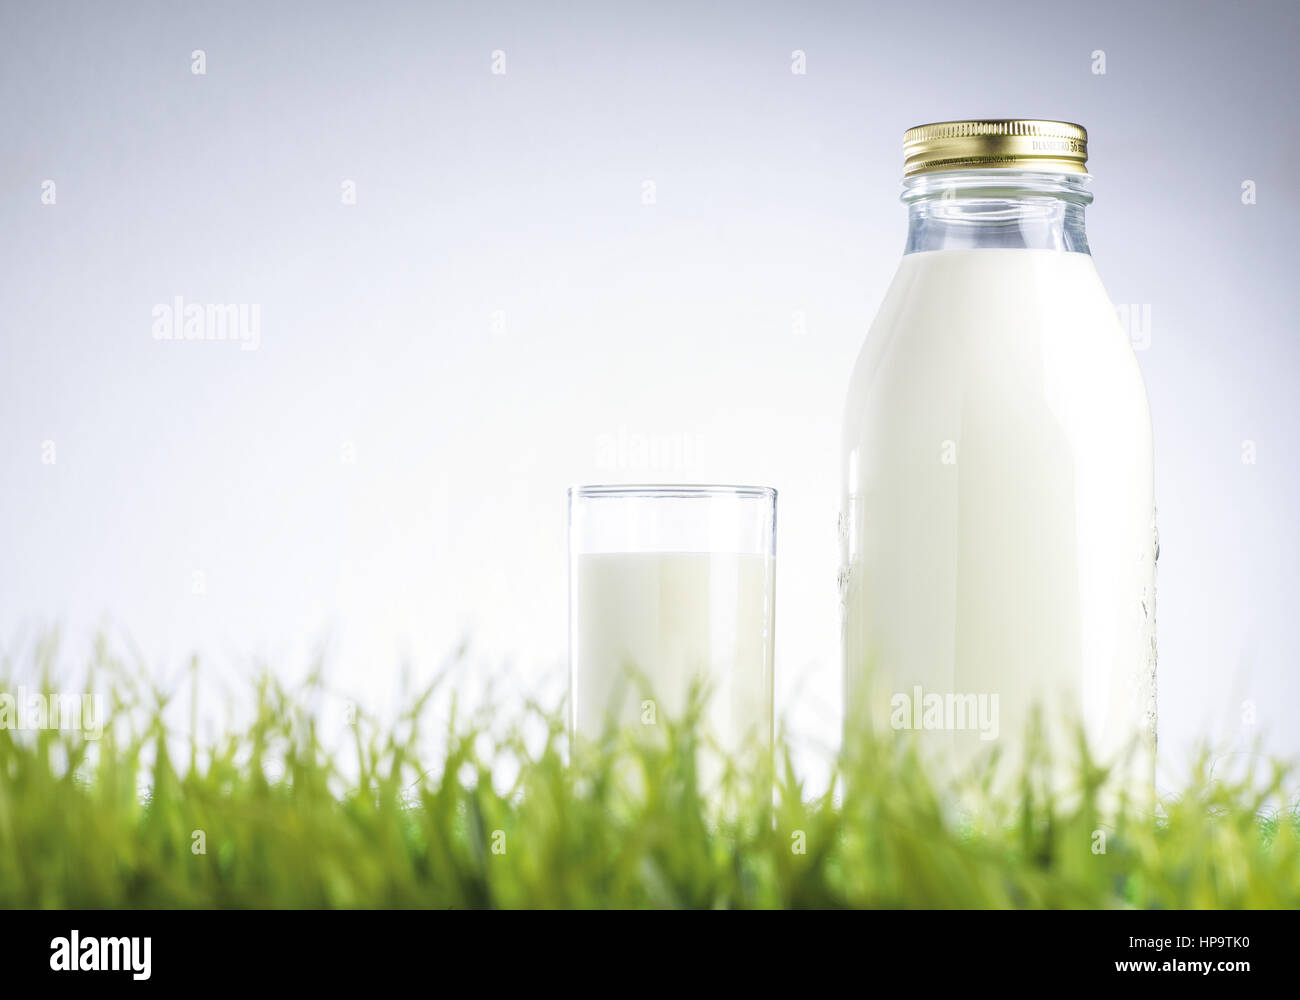 Flasche und Glas mit Milch stehen im Gras Stock Photo